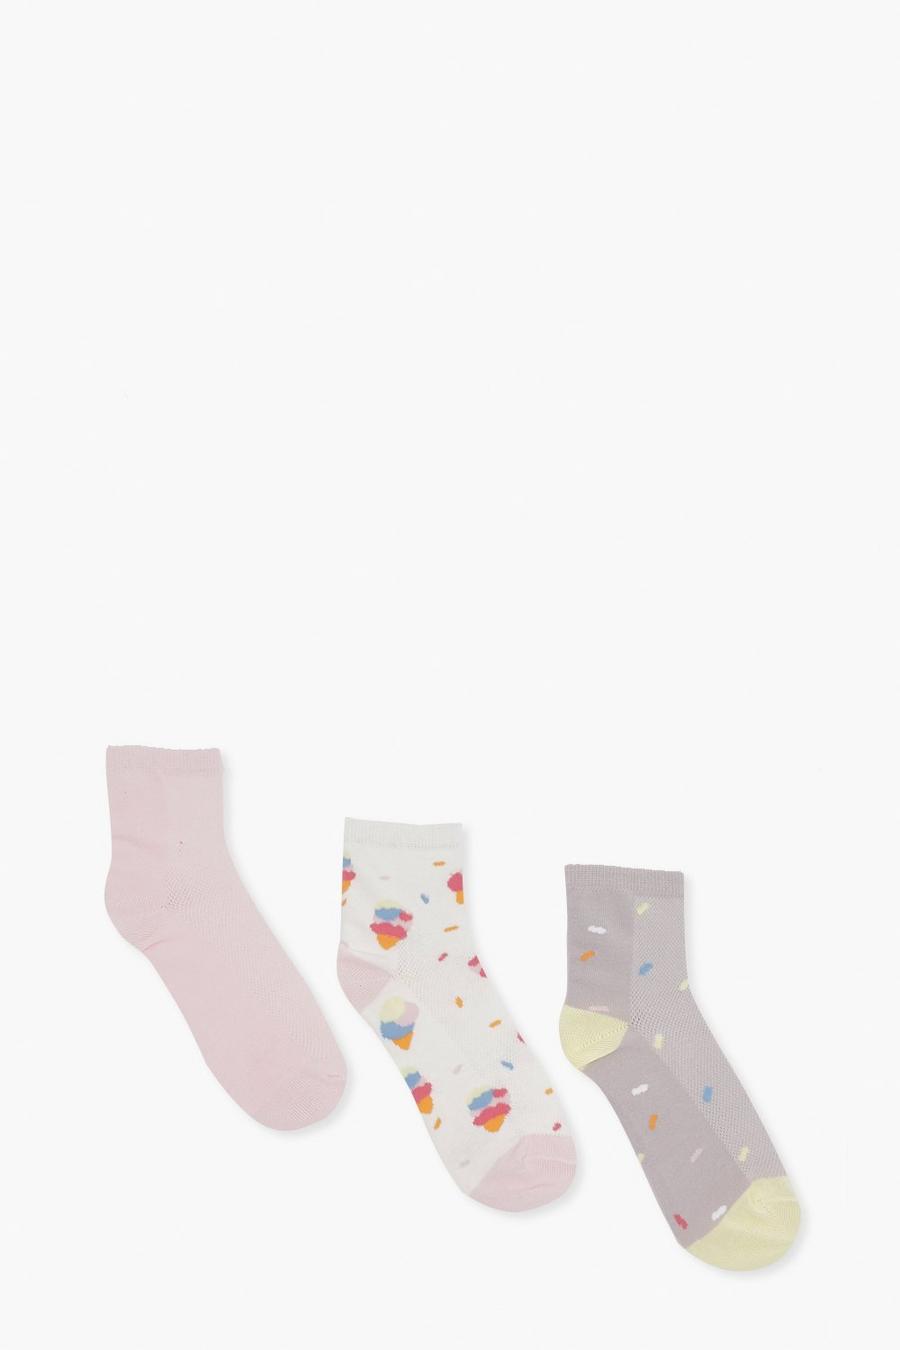 Multi Jacquard And Plain Pastels Socks 3 Pack